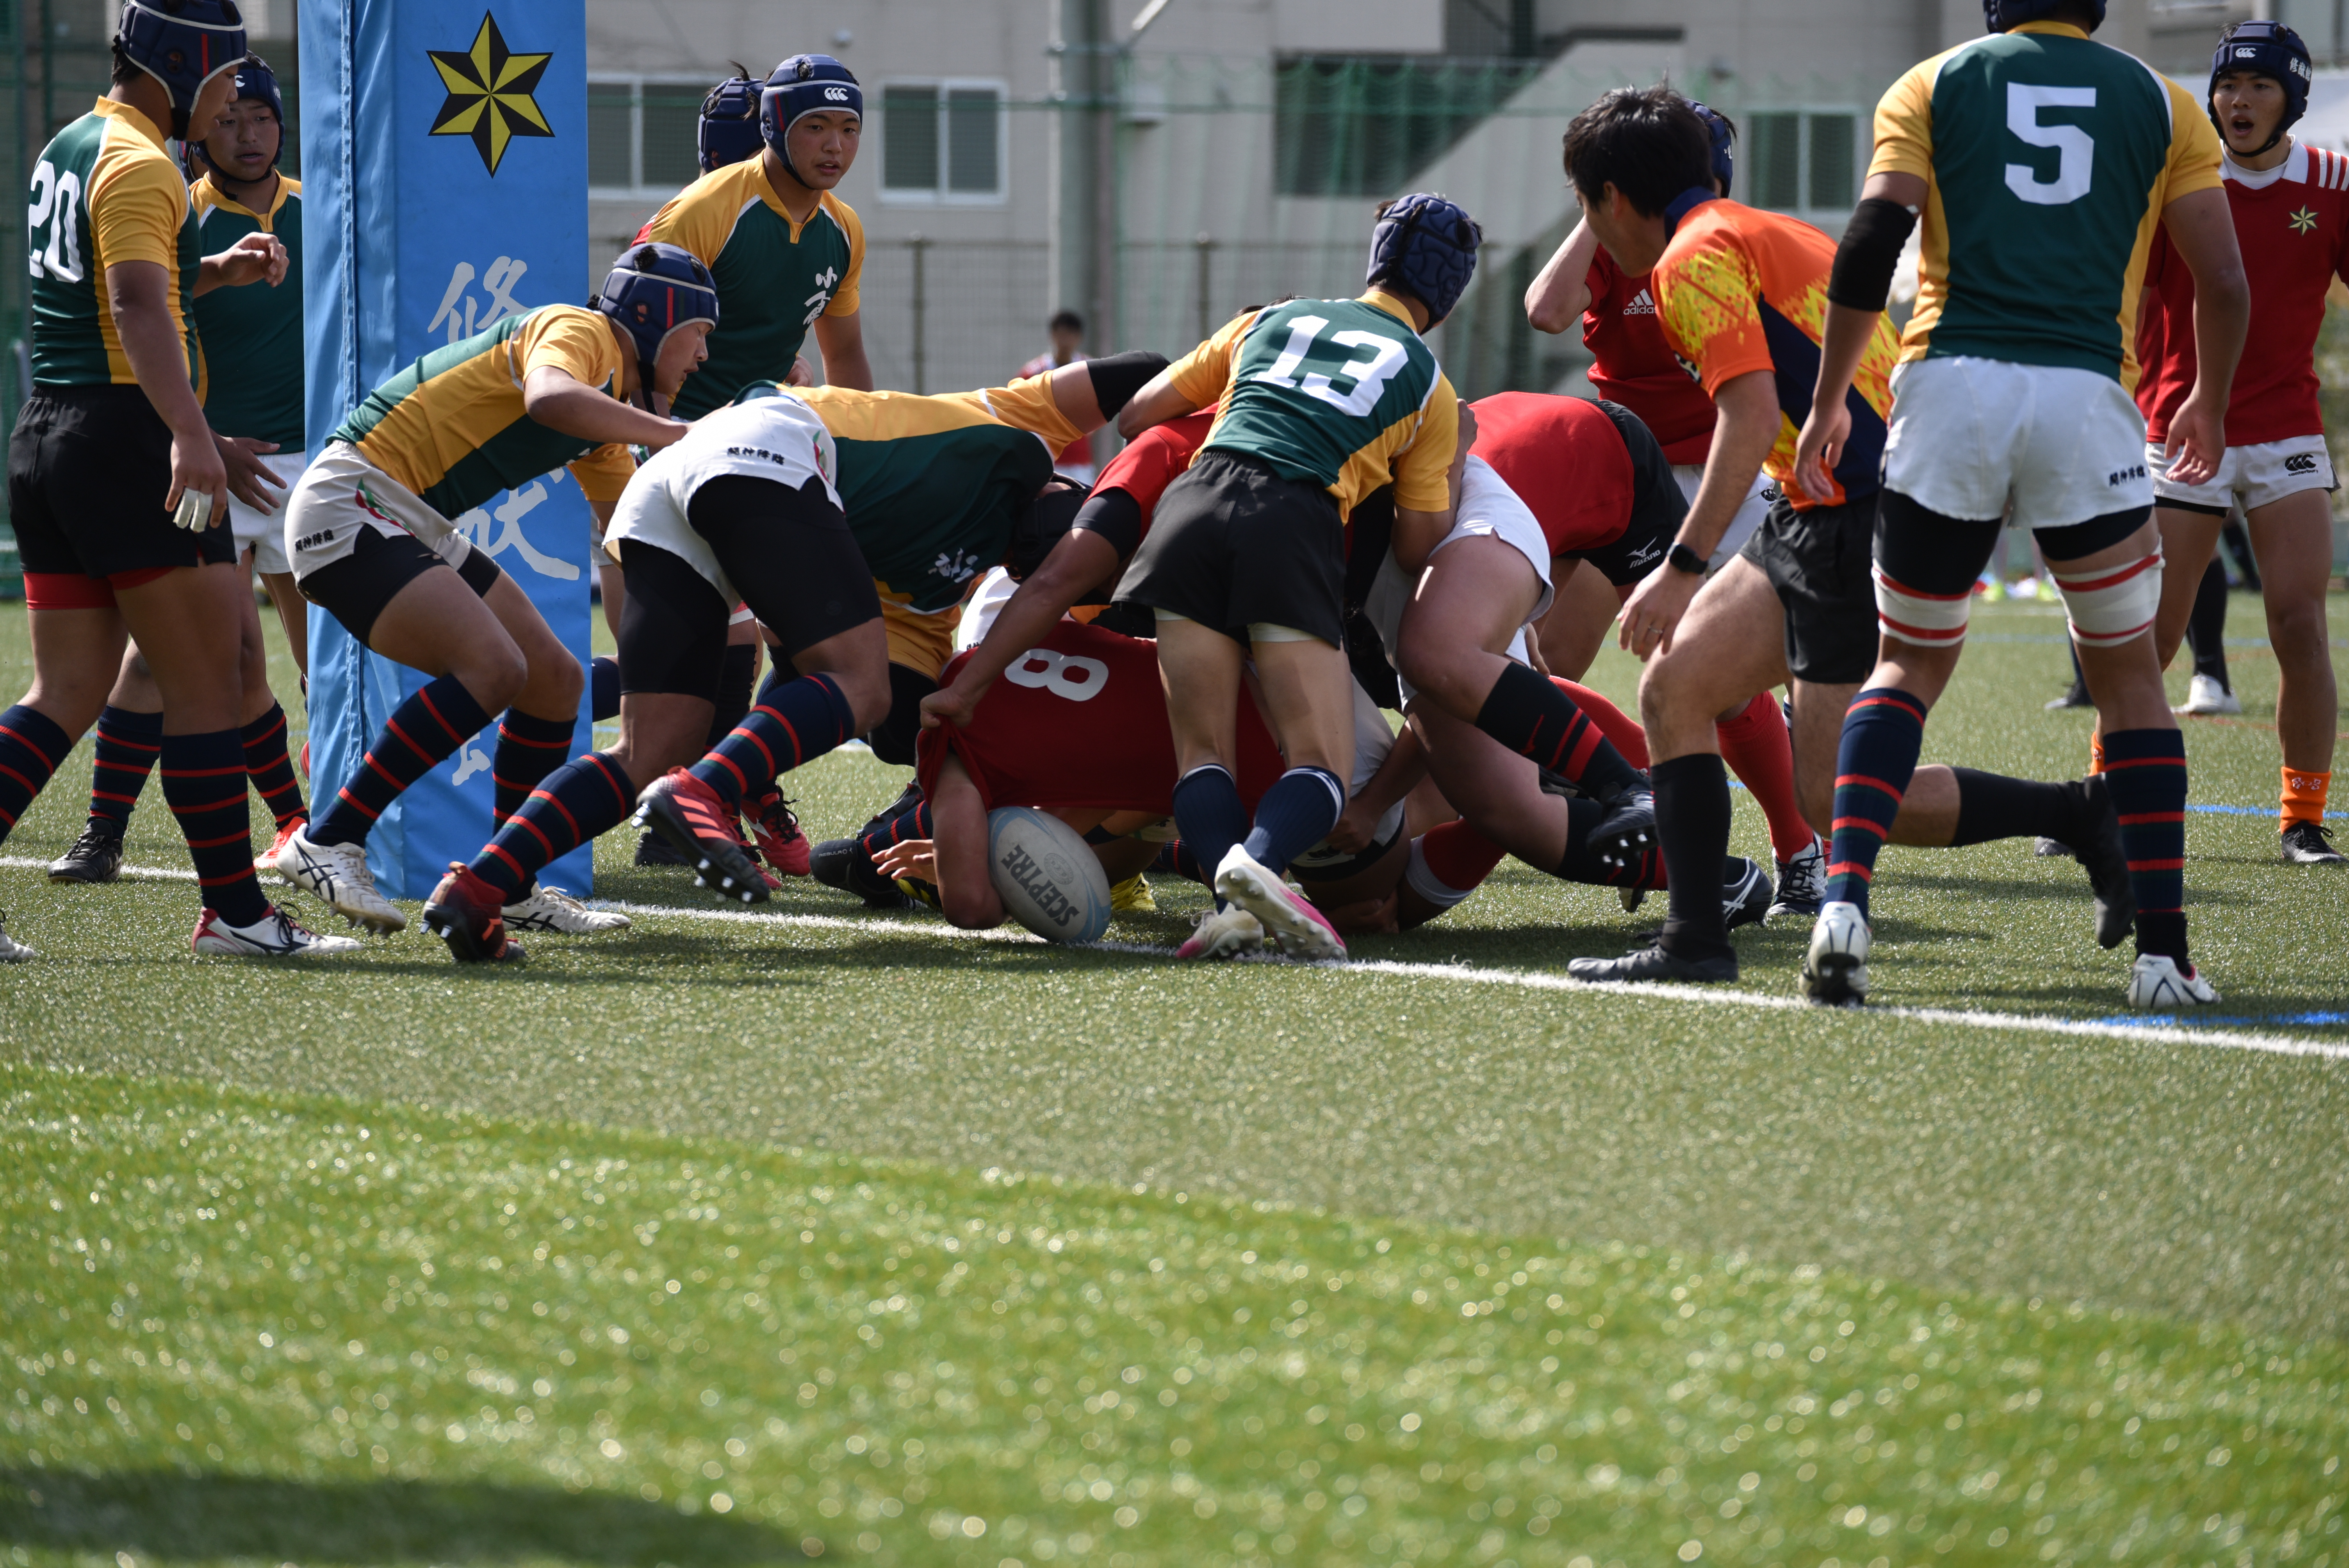 http://kokura-rugby.sakura.ne.jp/DSC_9615%20%281%29_original.JPG